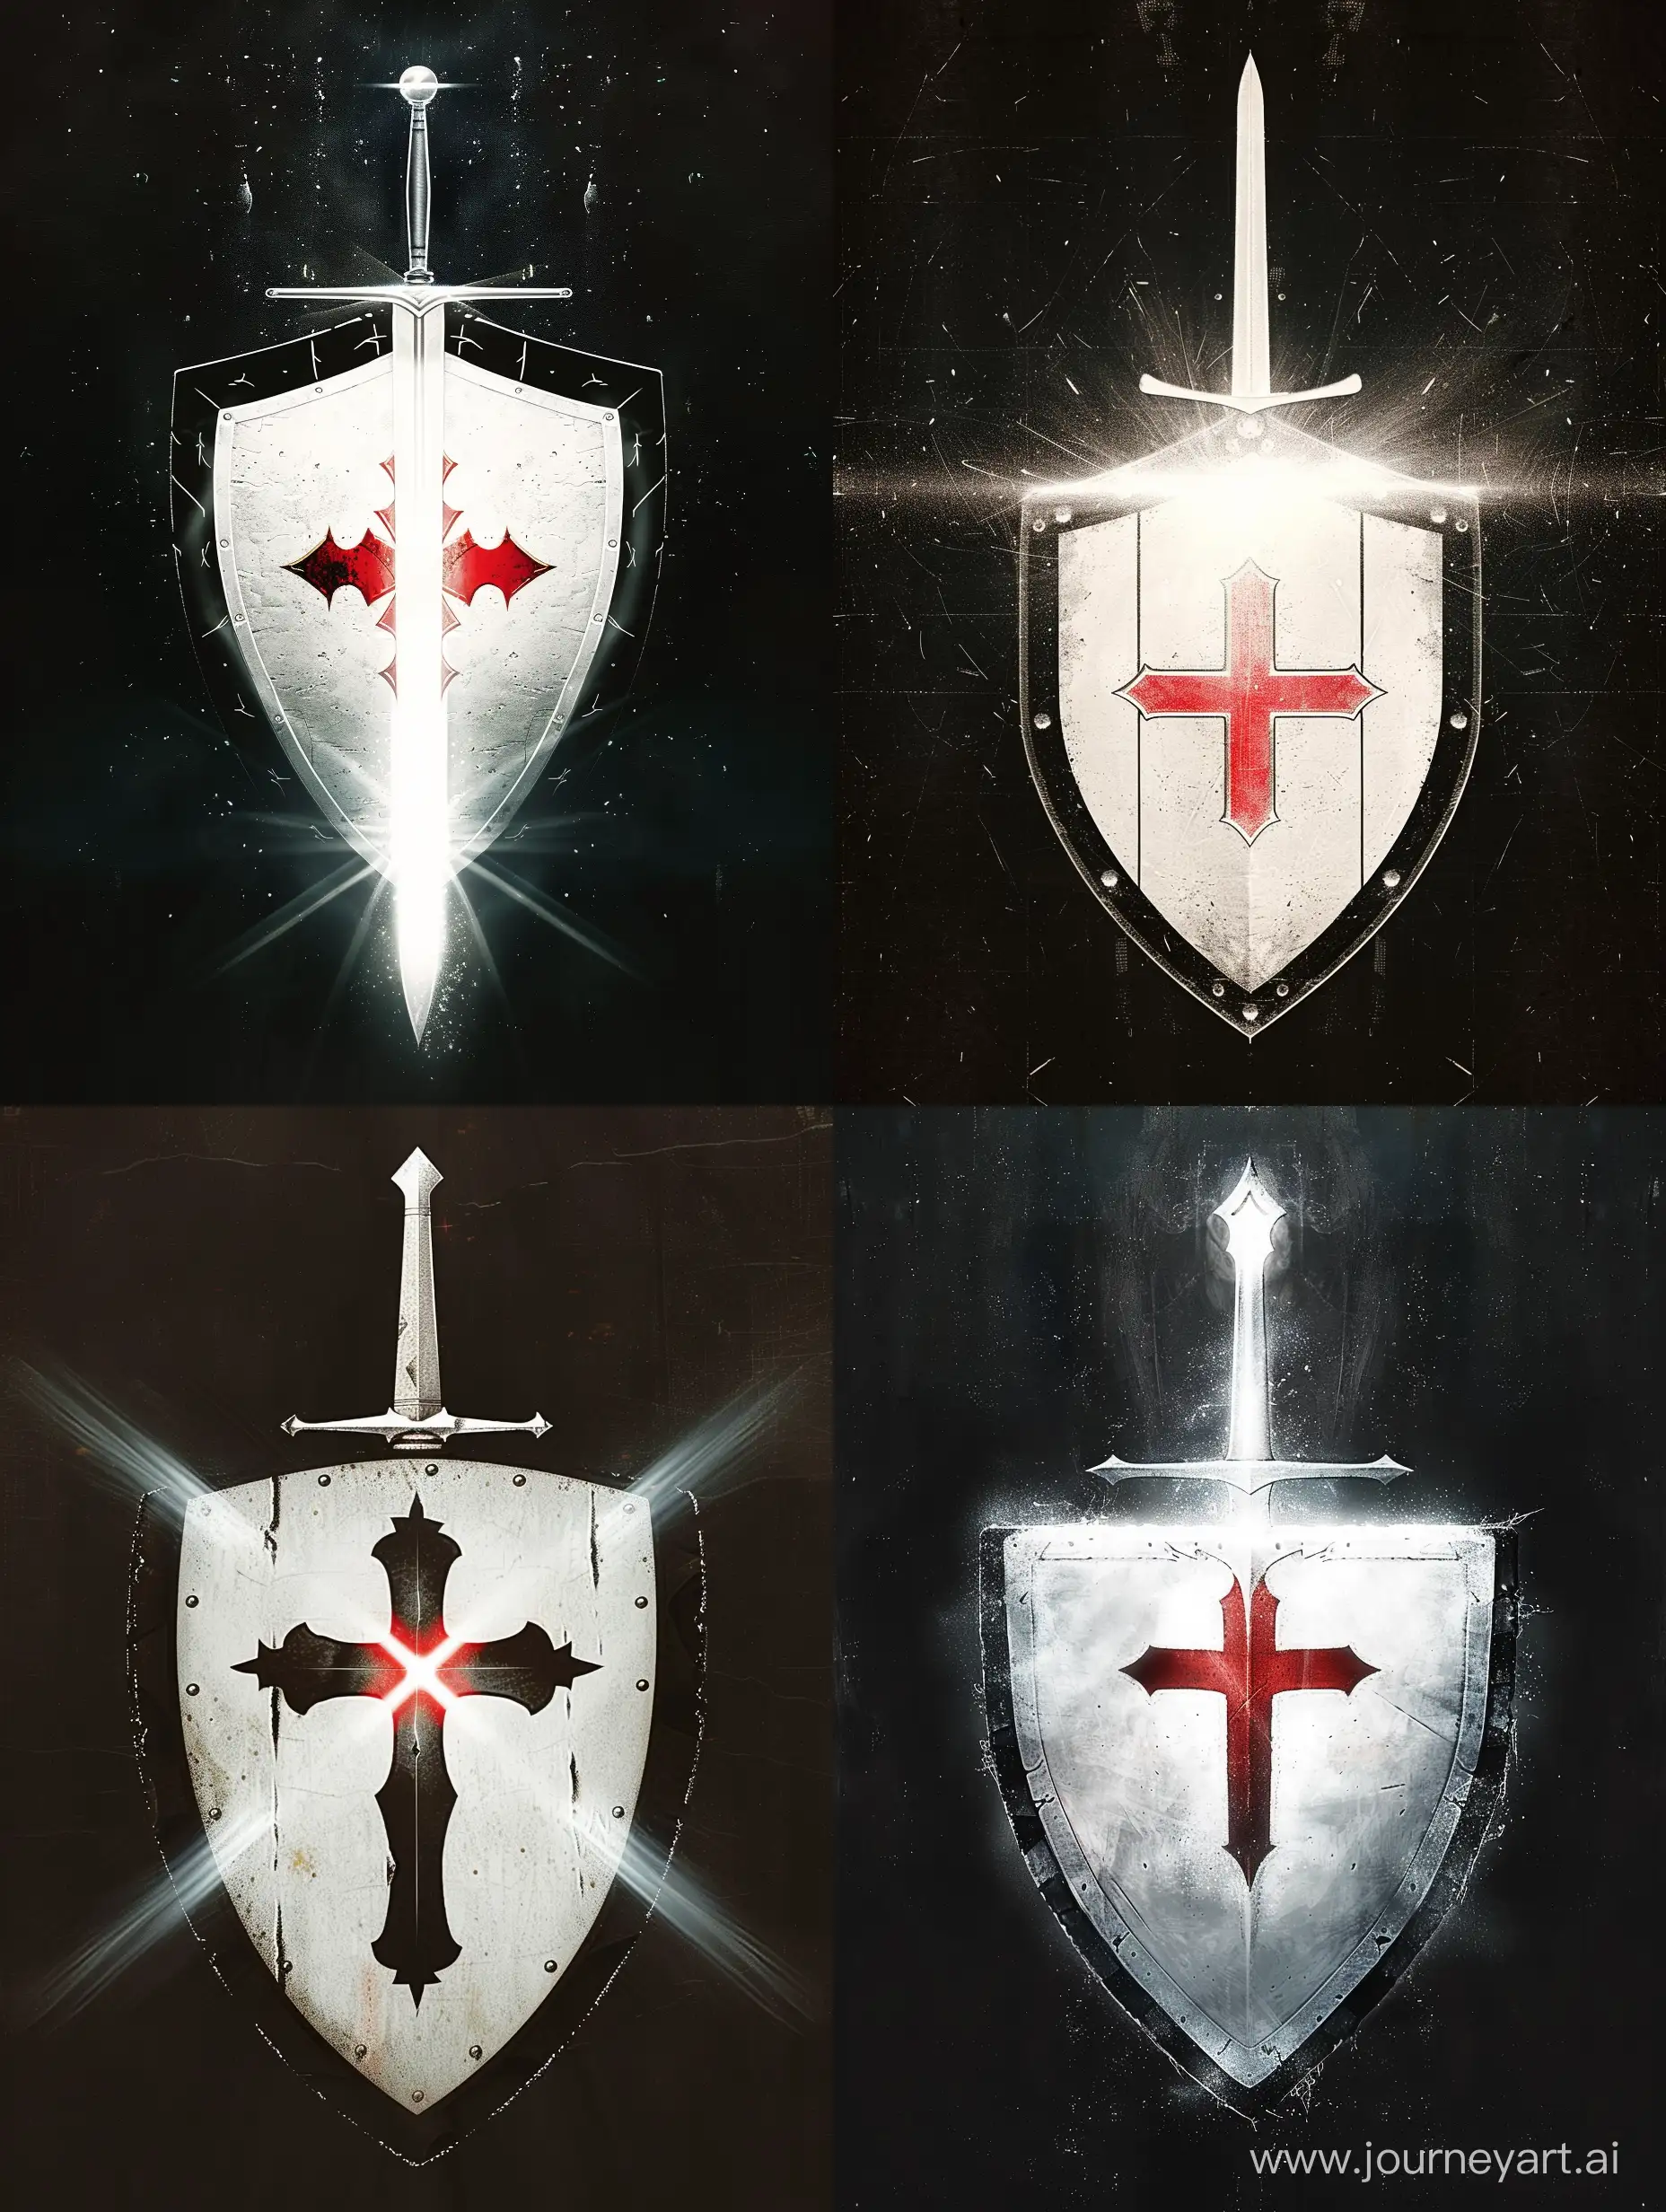 Герб Ордена Великого Света. Белый щит с красным крестом в центре. По краям щита чёрная обводка, щит сияет Светом. За щитом прямой серебряный меч, клинок меча весь сияет белым светом